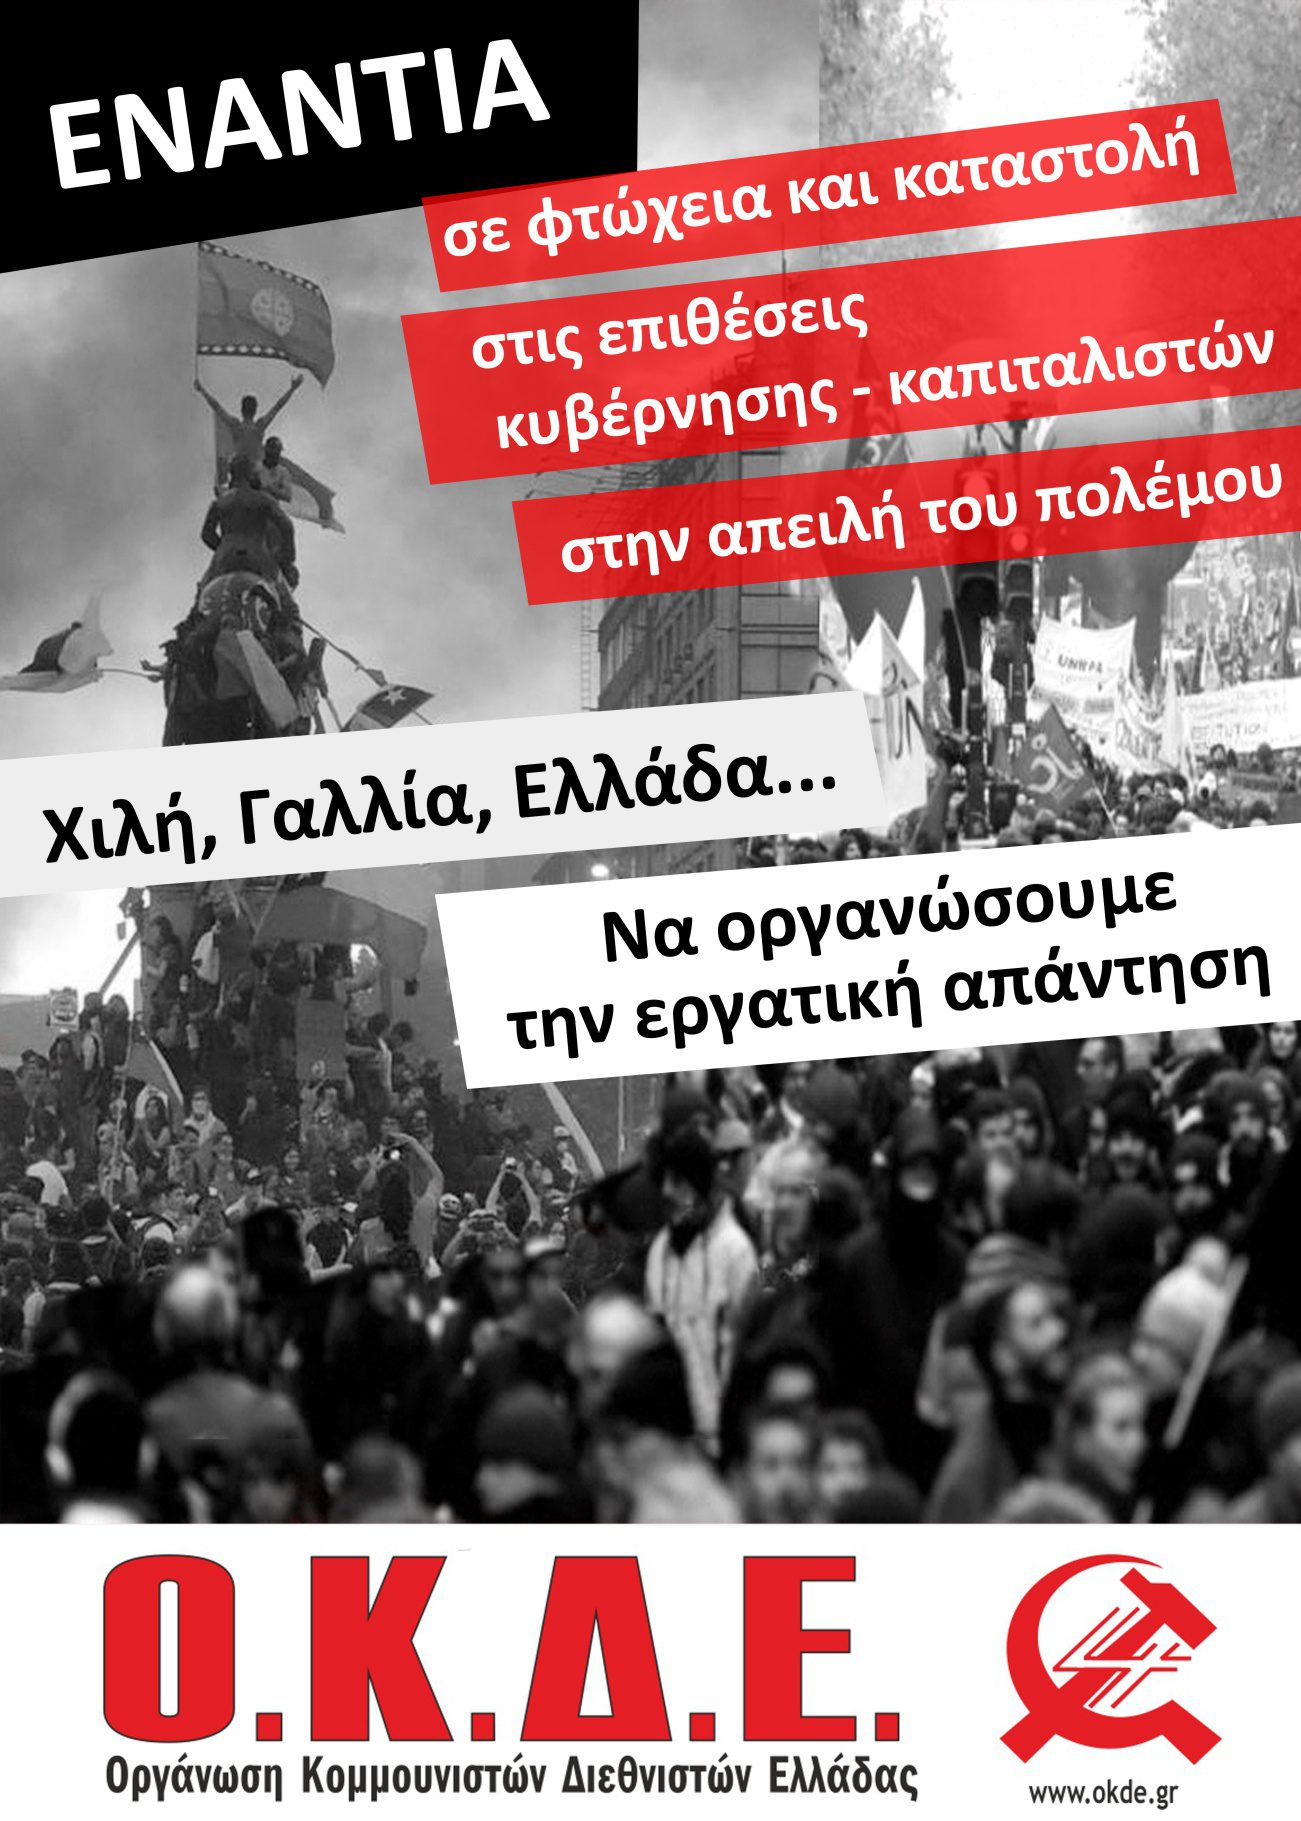 Εκδήλωση – Συζήτηση της ΟΚΔΕ στην Αθήνα Τετάρτη 19/2. Μεγάλοι αγώνες και εξεγέρσεις σε όλη την υφήλιο, να οργανώσουμε την εργατική απάντηση